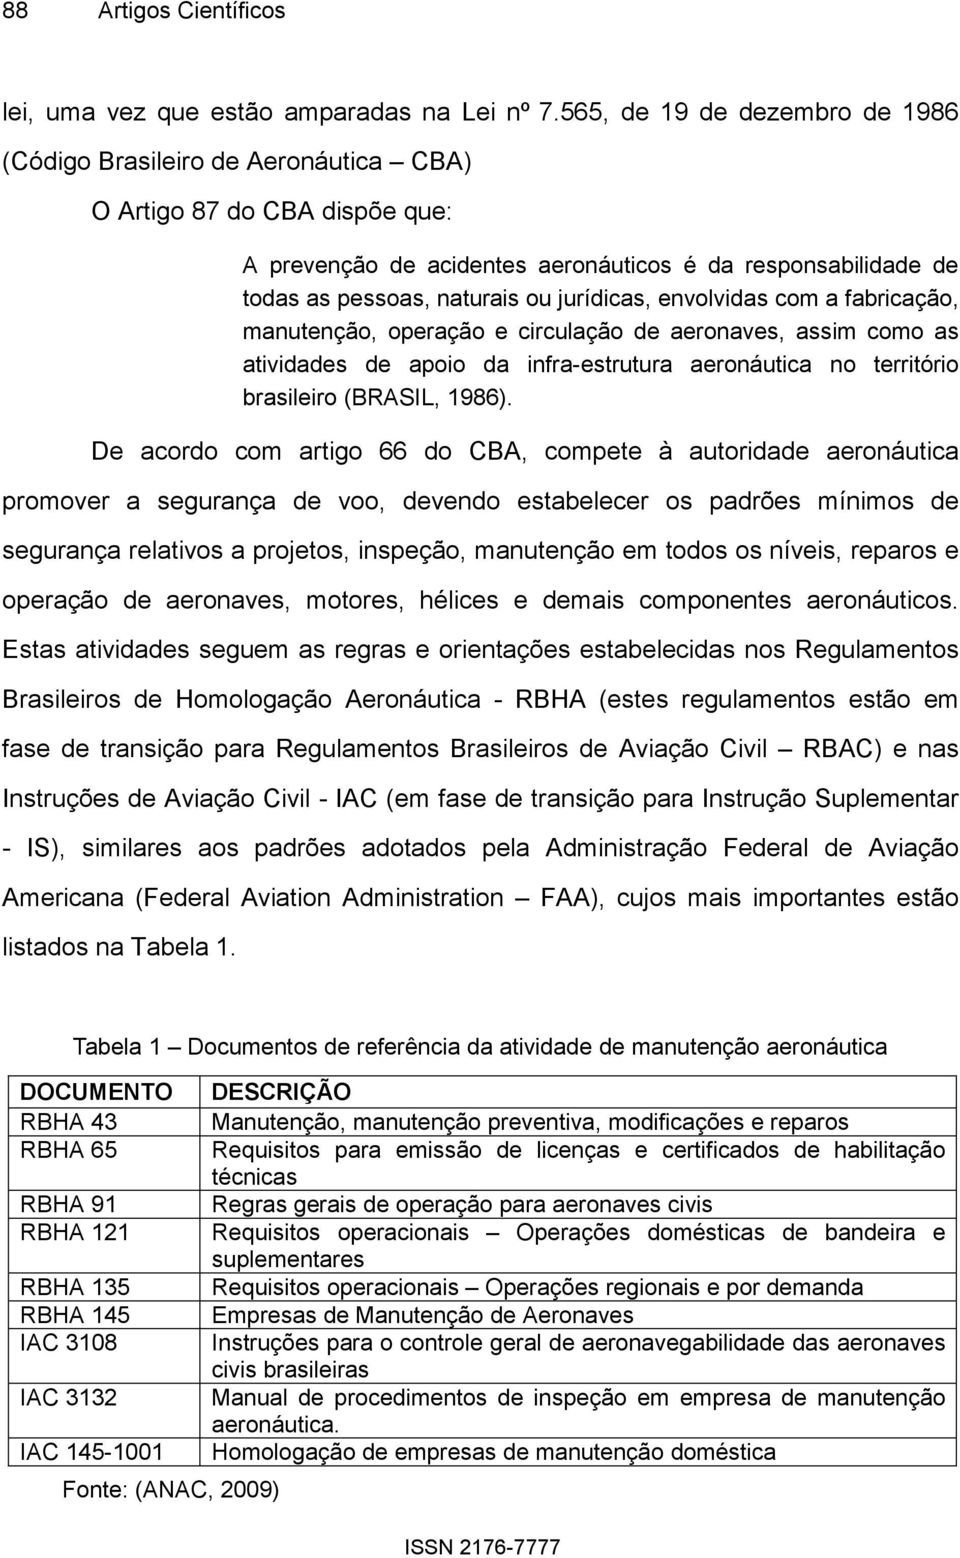 jurídicas, envolvidas com a fabricação, manutenção, operação e circulação de aeronaves, assim como as atividades de apoio da infra-estrutura aeronáutica no território brasileiro (BRASIL, 1986).